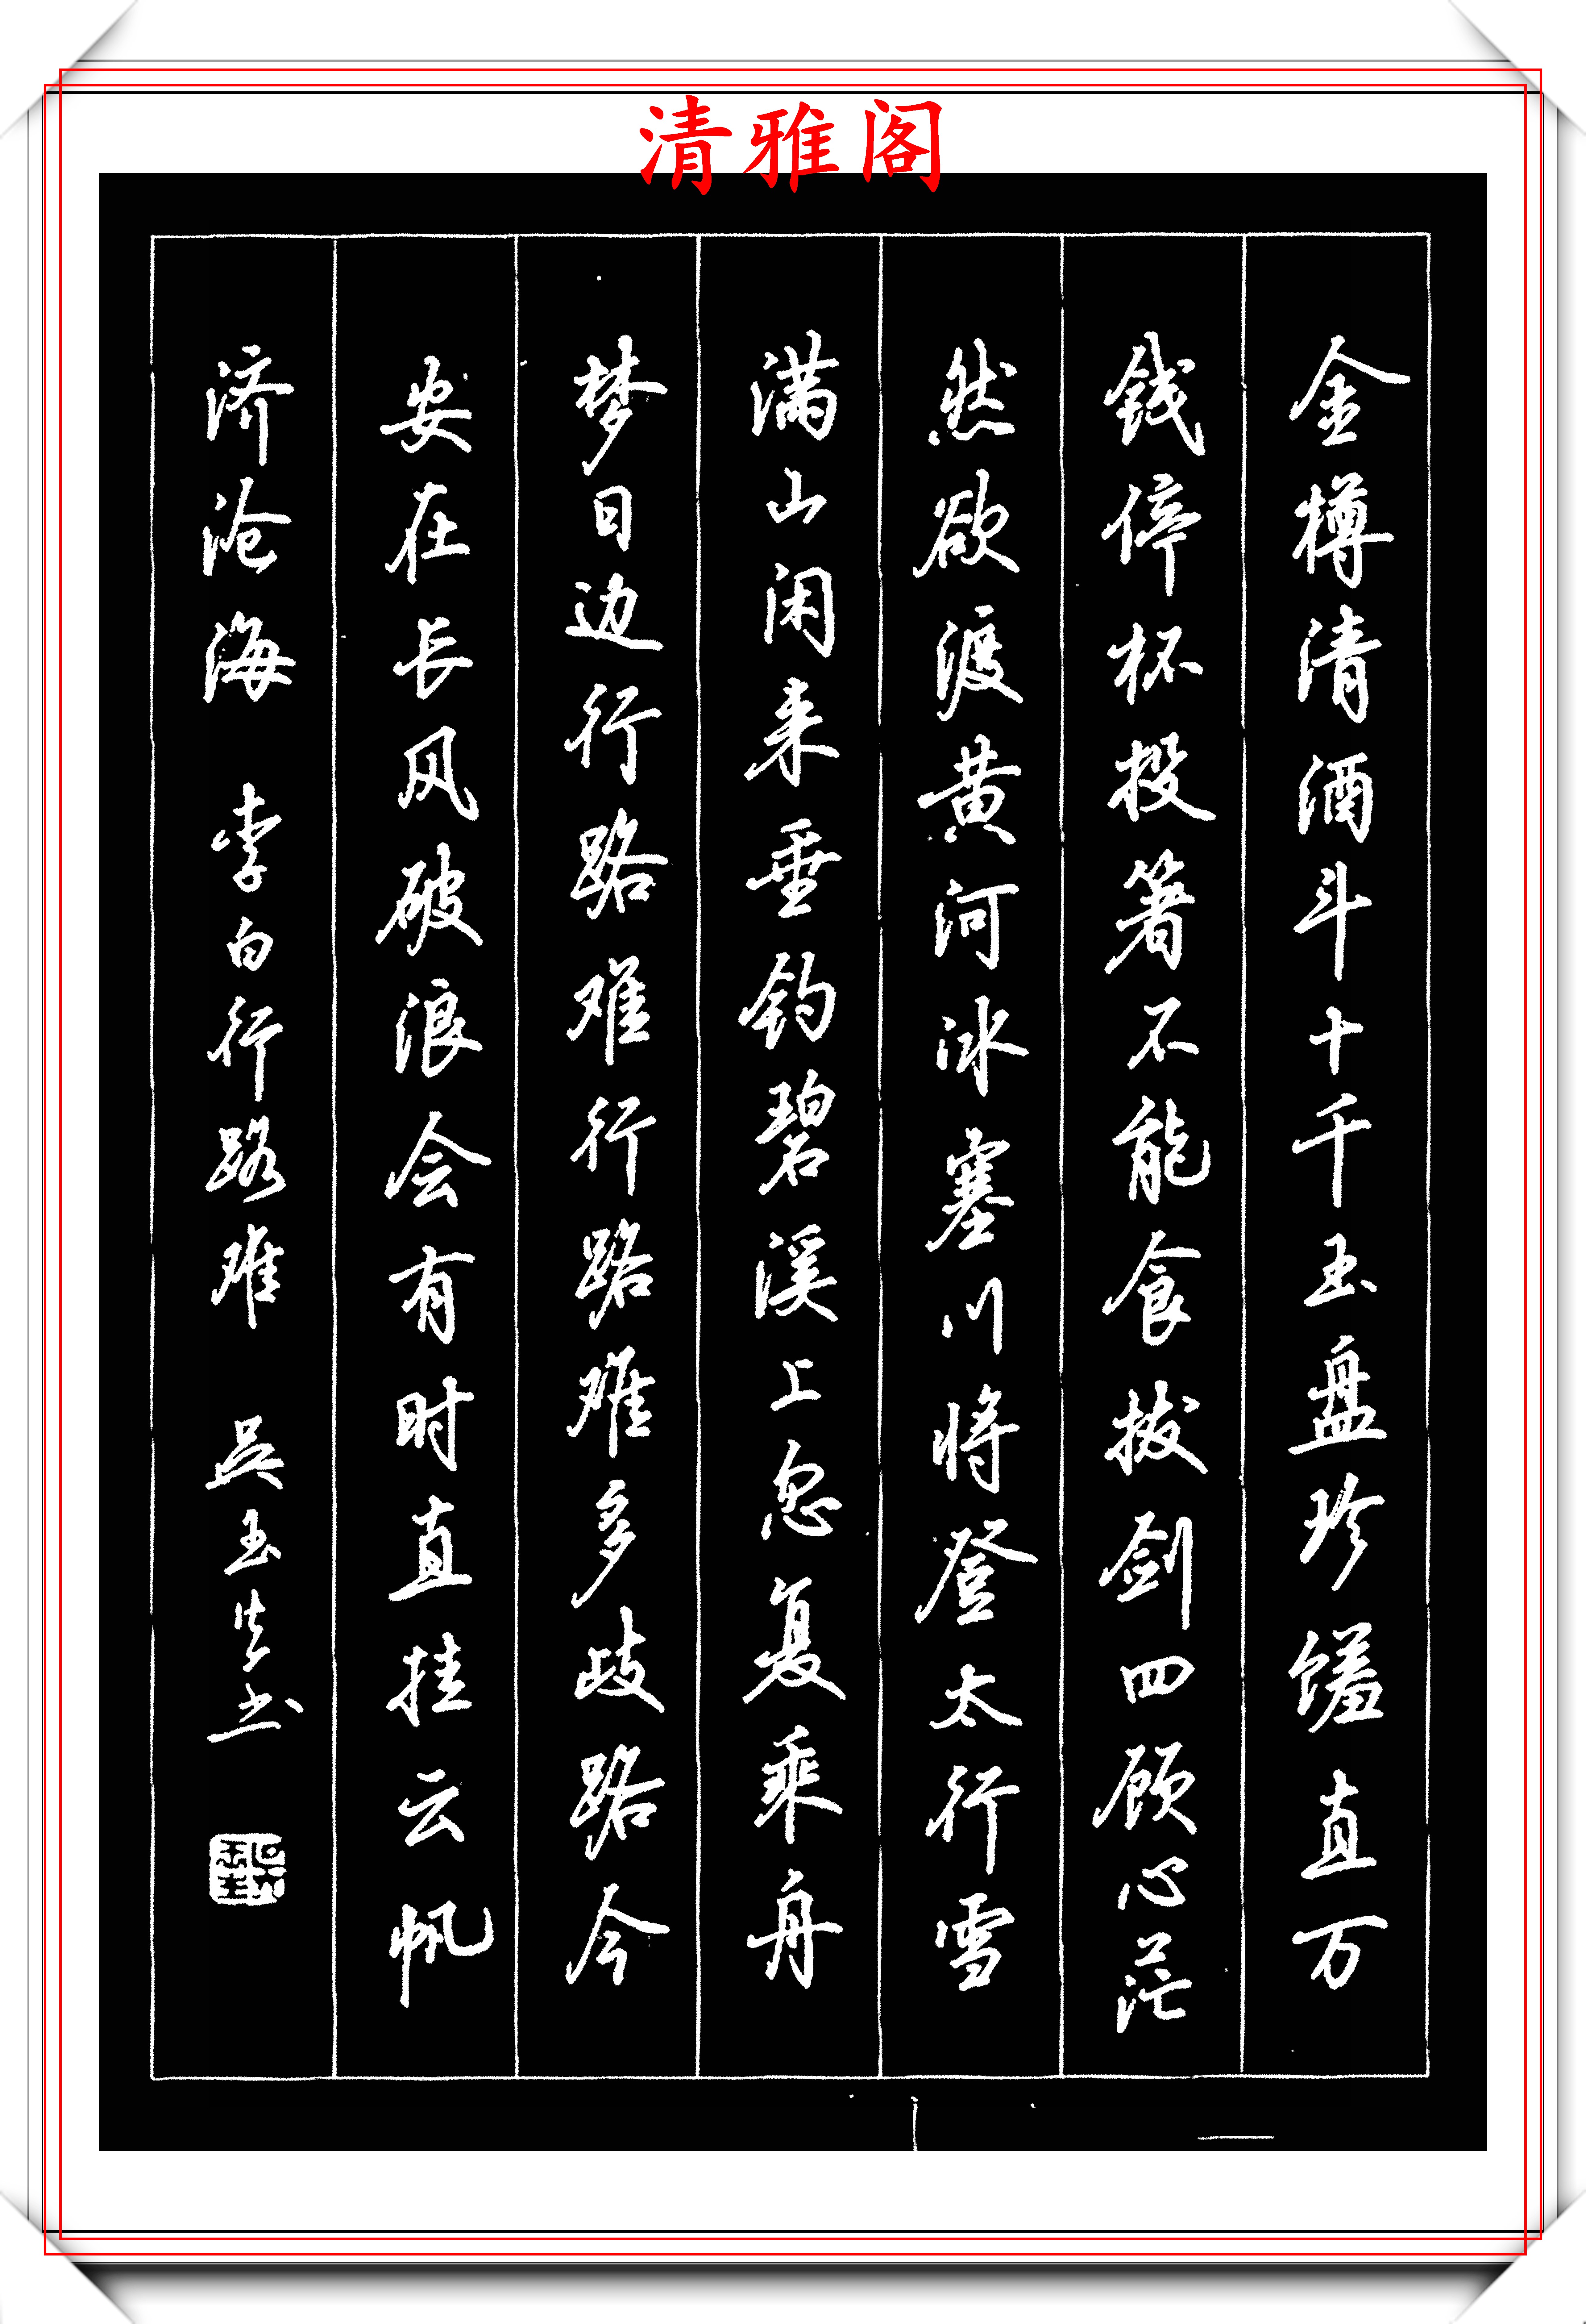 曾获全国首届文明杯书写大赛唯一特等奖,名列中国汉字首届硬笔书法